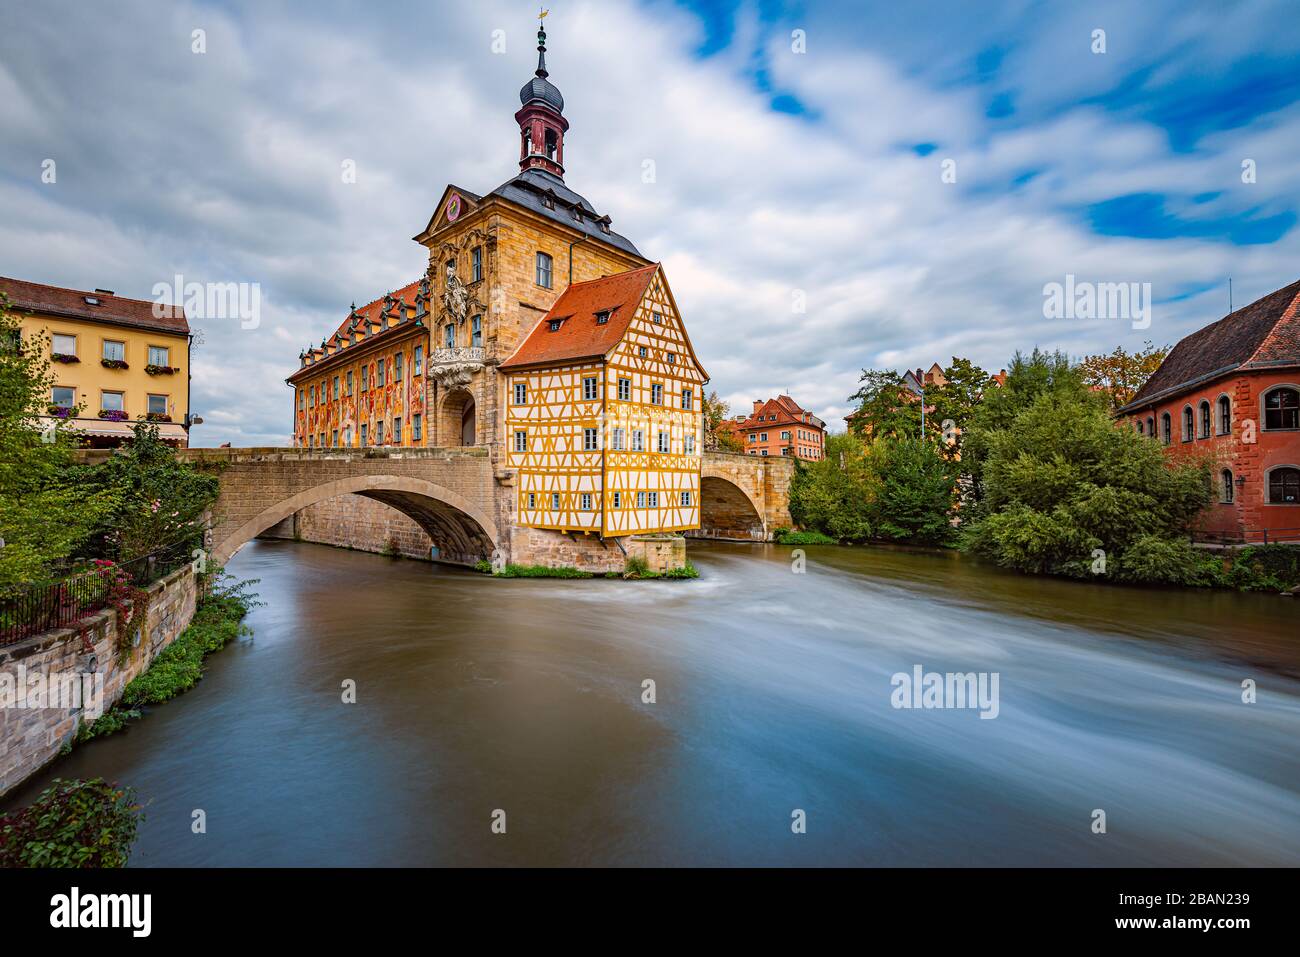 Bamberg ciudad en Alemania. Edificio del ayuntamiento en el fondo con cielo azul nublado. Arquitectura y viajes en Europa. Río que fluye en primer plano. Foto de stock